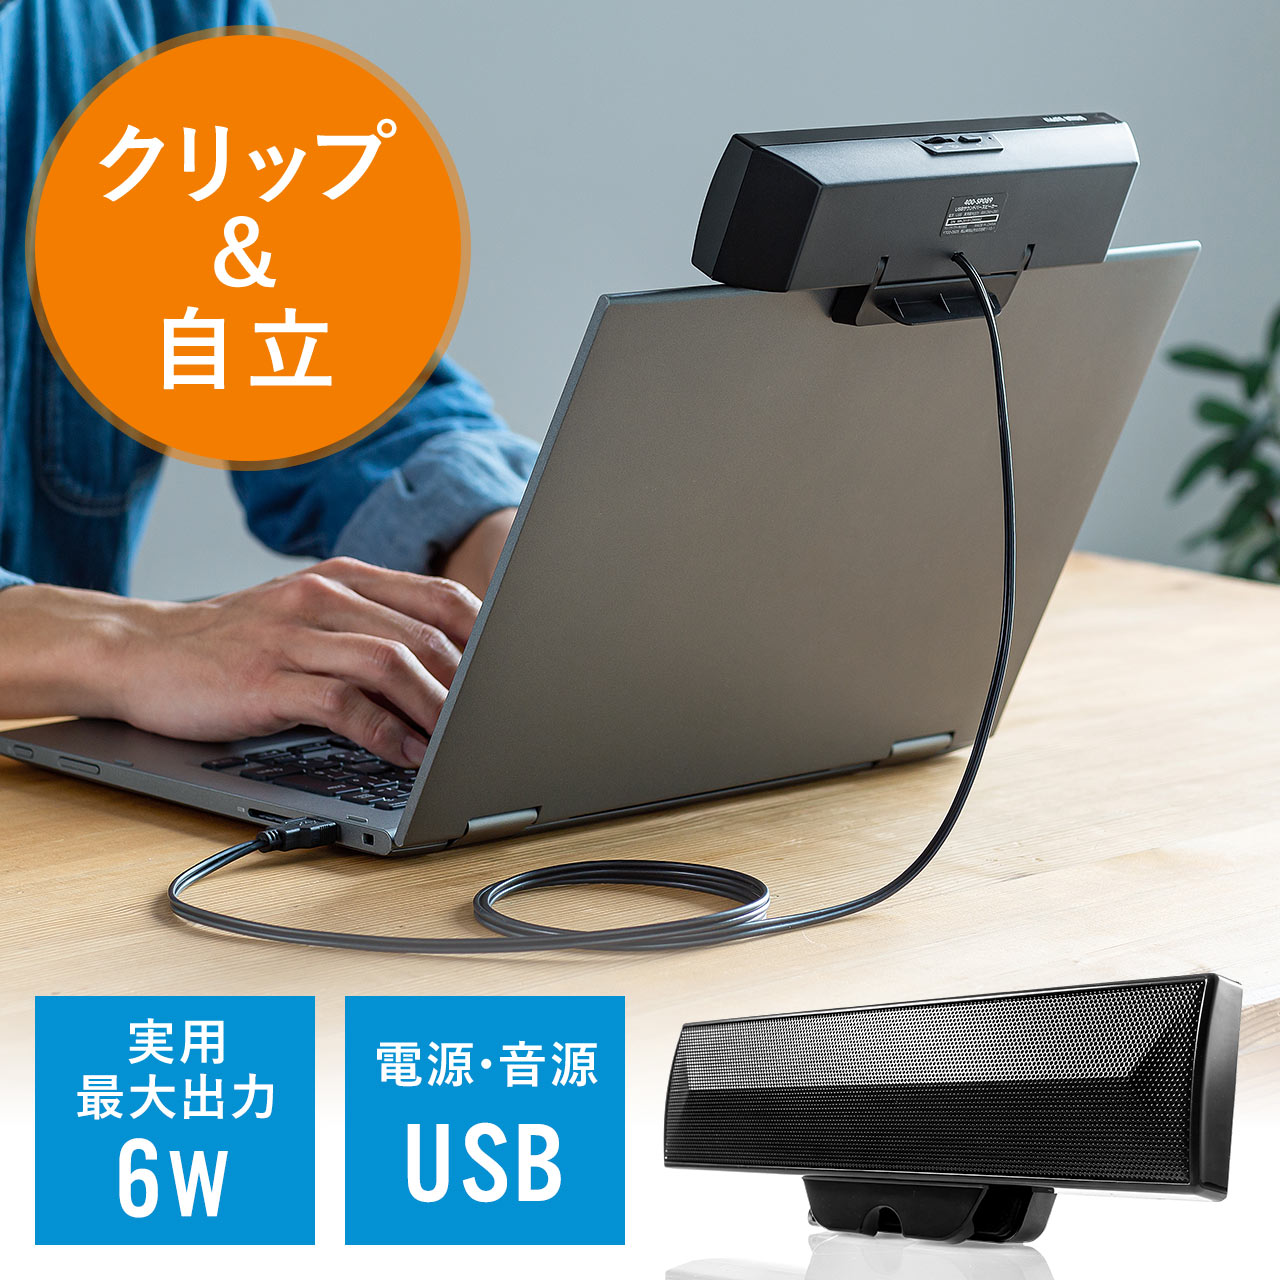 USB サウンドバースピーカー 6W出力 クリップ&スタンド対応 PC